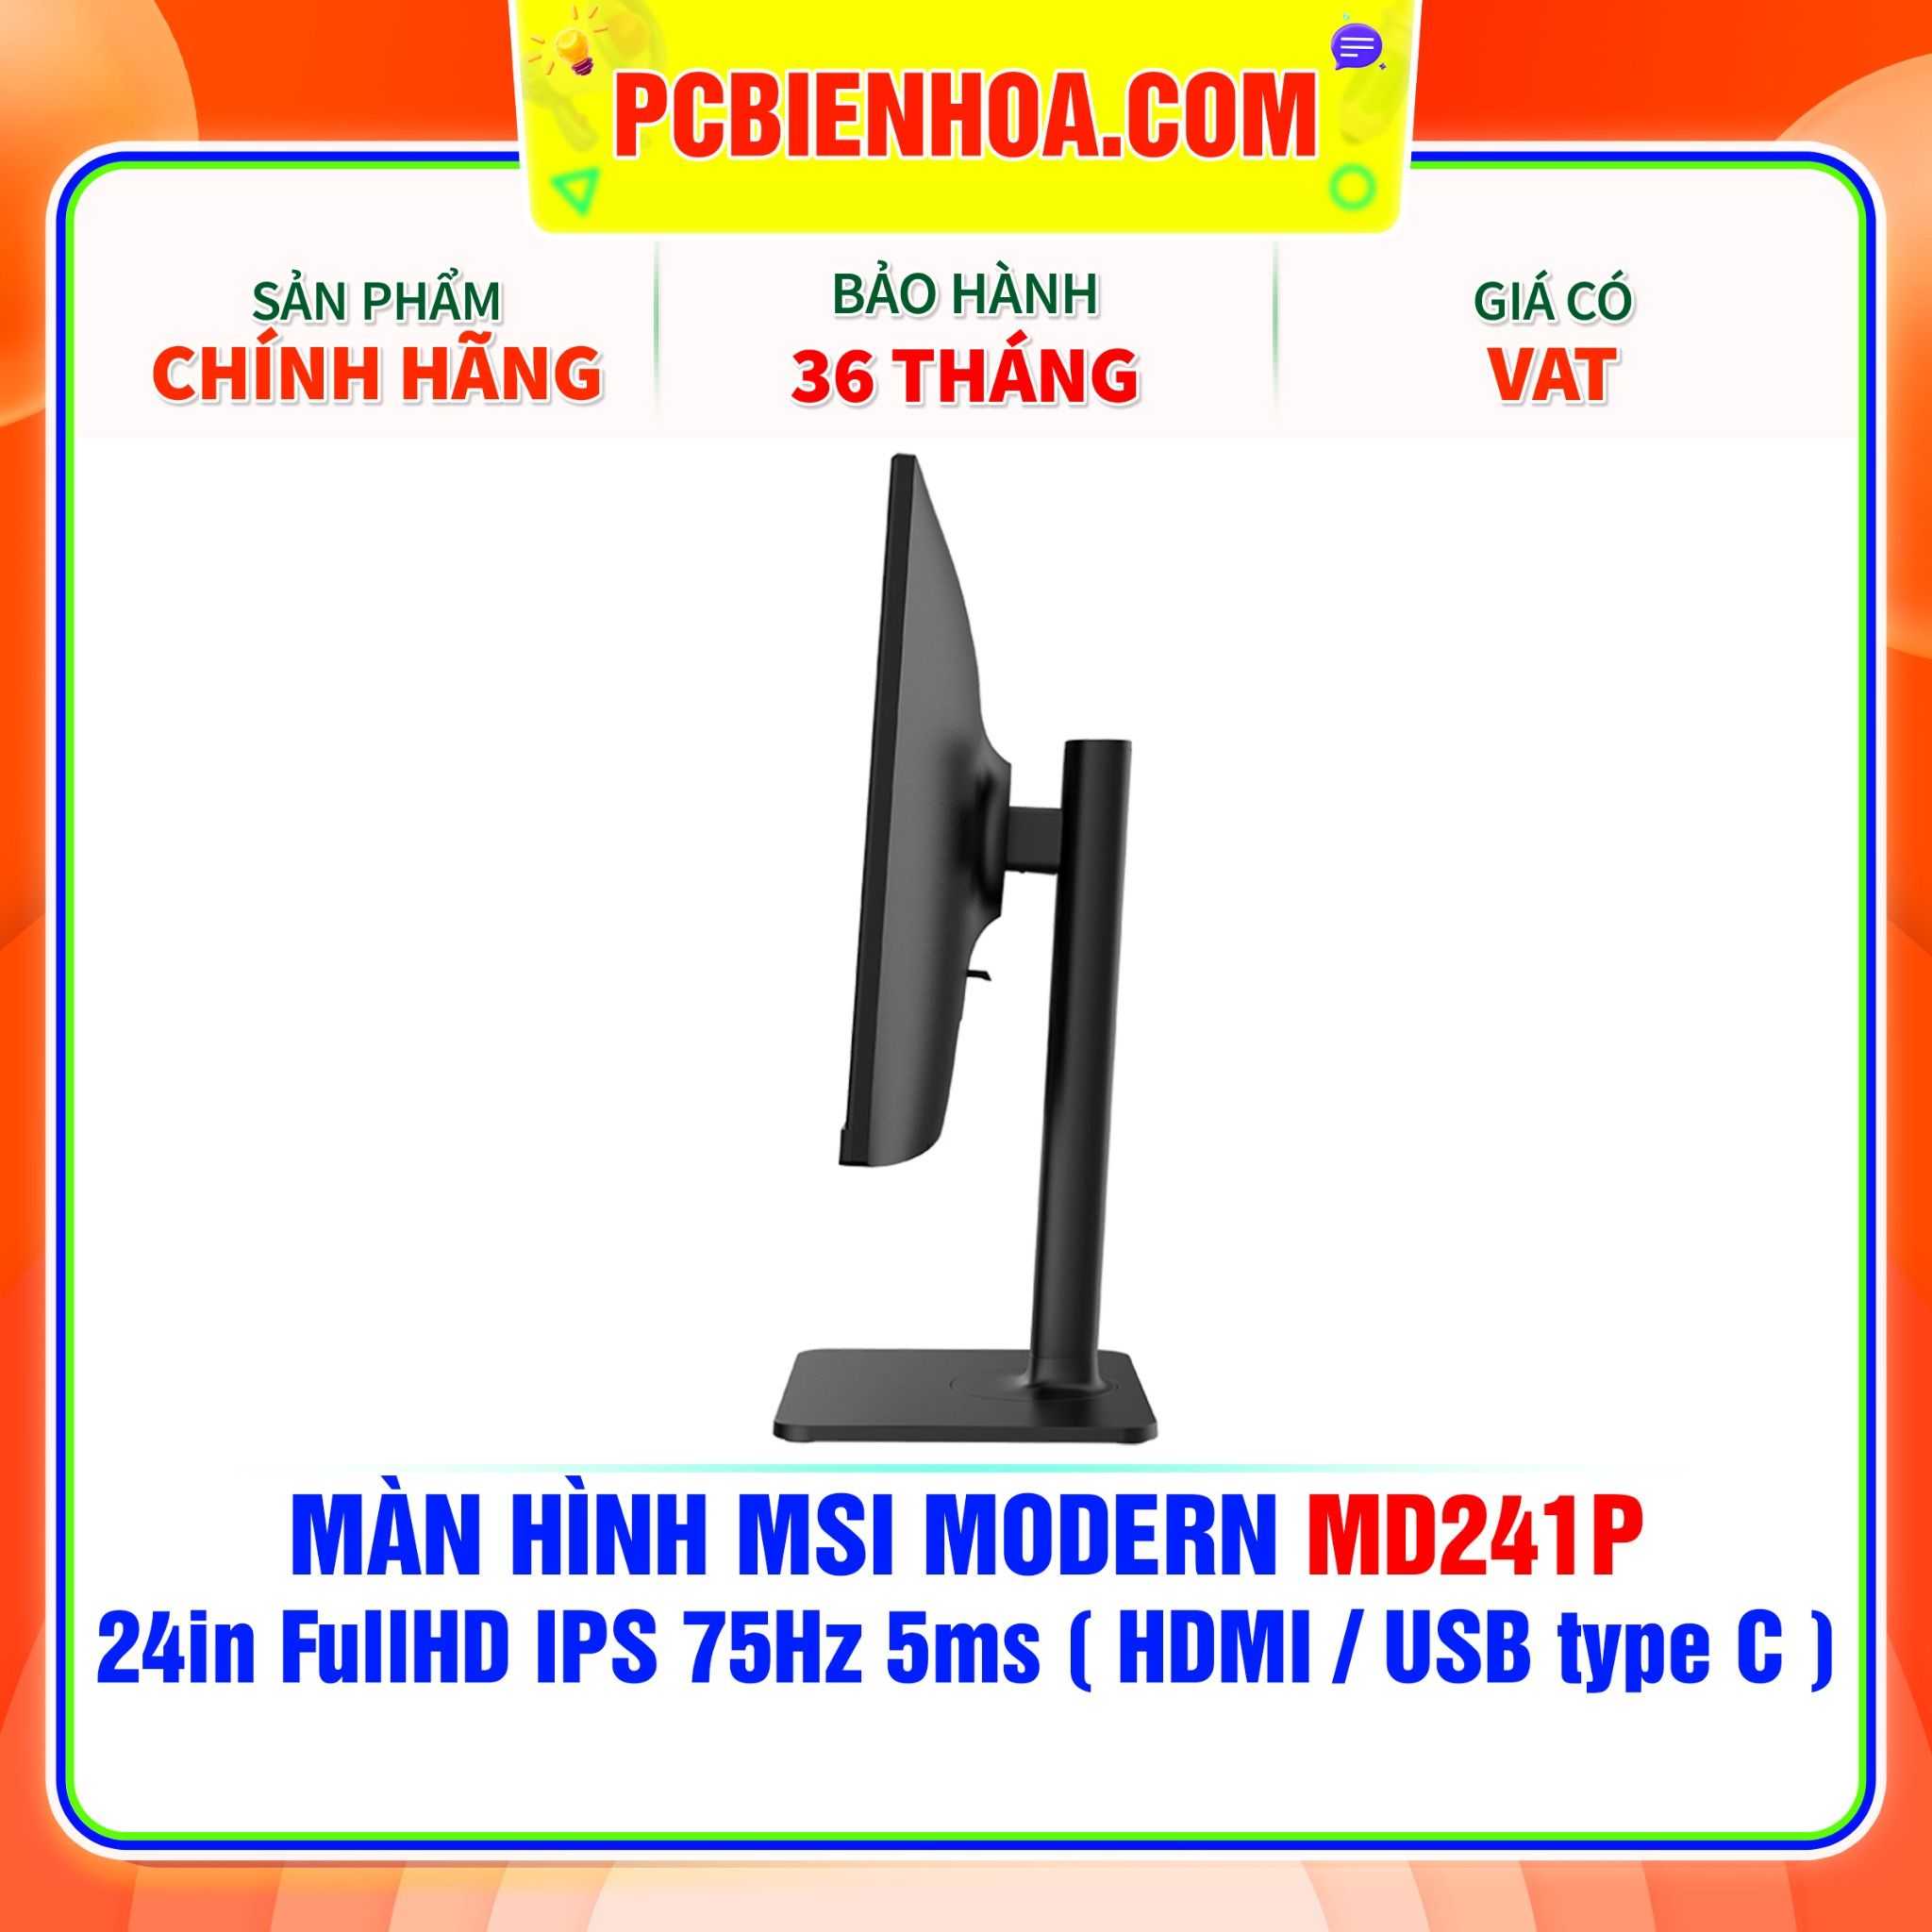  MÀN HÌNH MSI MODERN MD241P 24in FullHD IPS 75Hz 5ms ( HDMI / USB type C ) - SIÊU PHẨM ĐỒ HOẠ HIỆN ĐẠI 